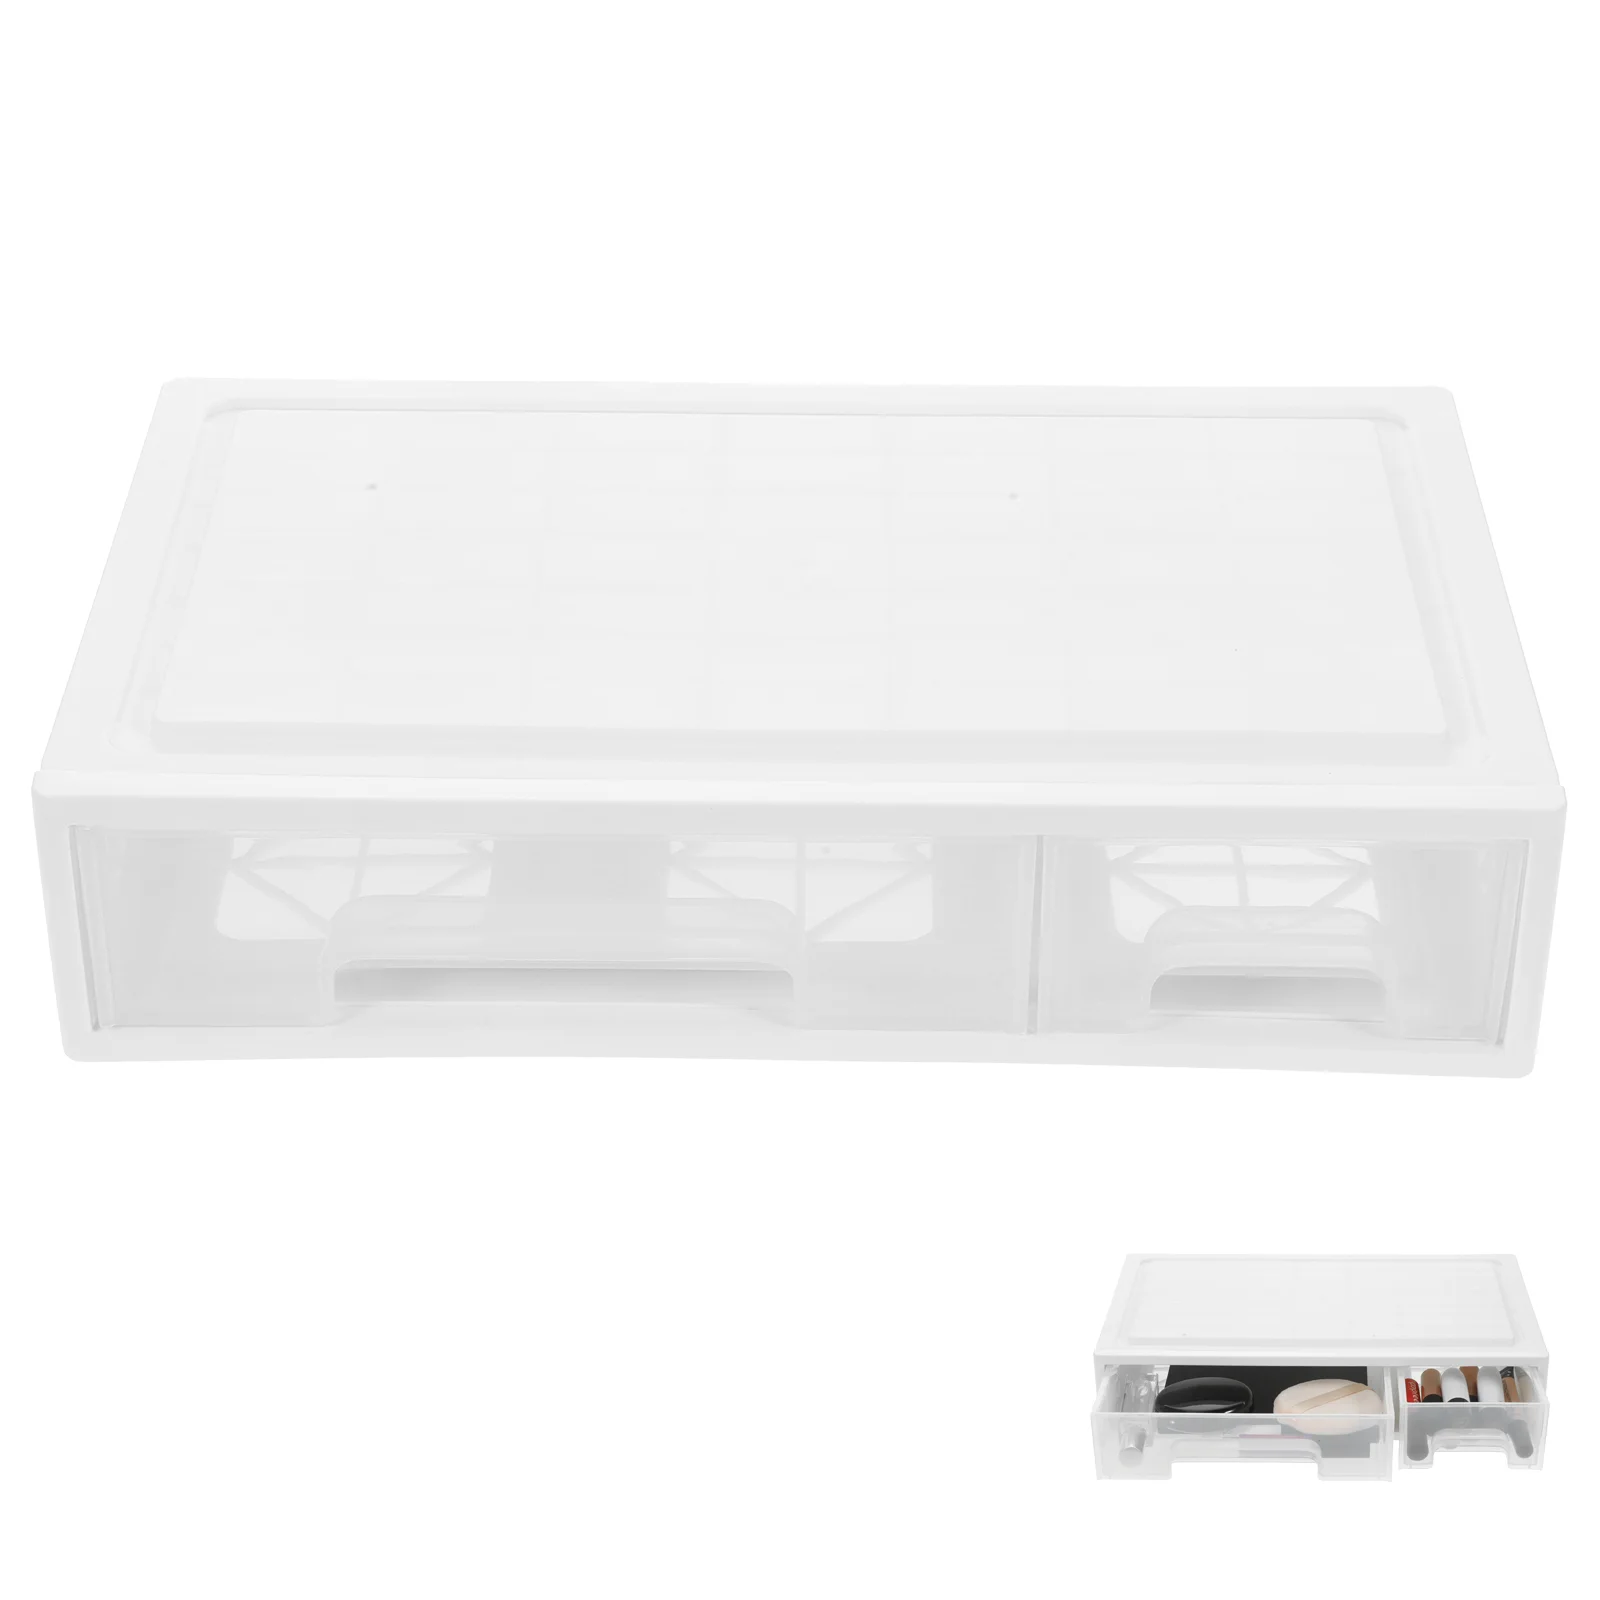 

Drawer Type Storage Case Desktop Organiser Plastic Drawers Containers Organizer Shelf Bins Makeup Large